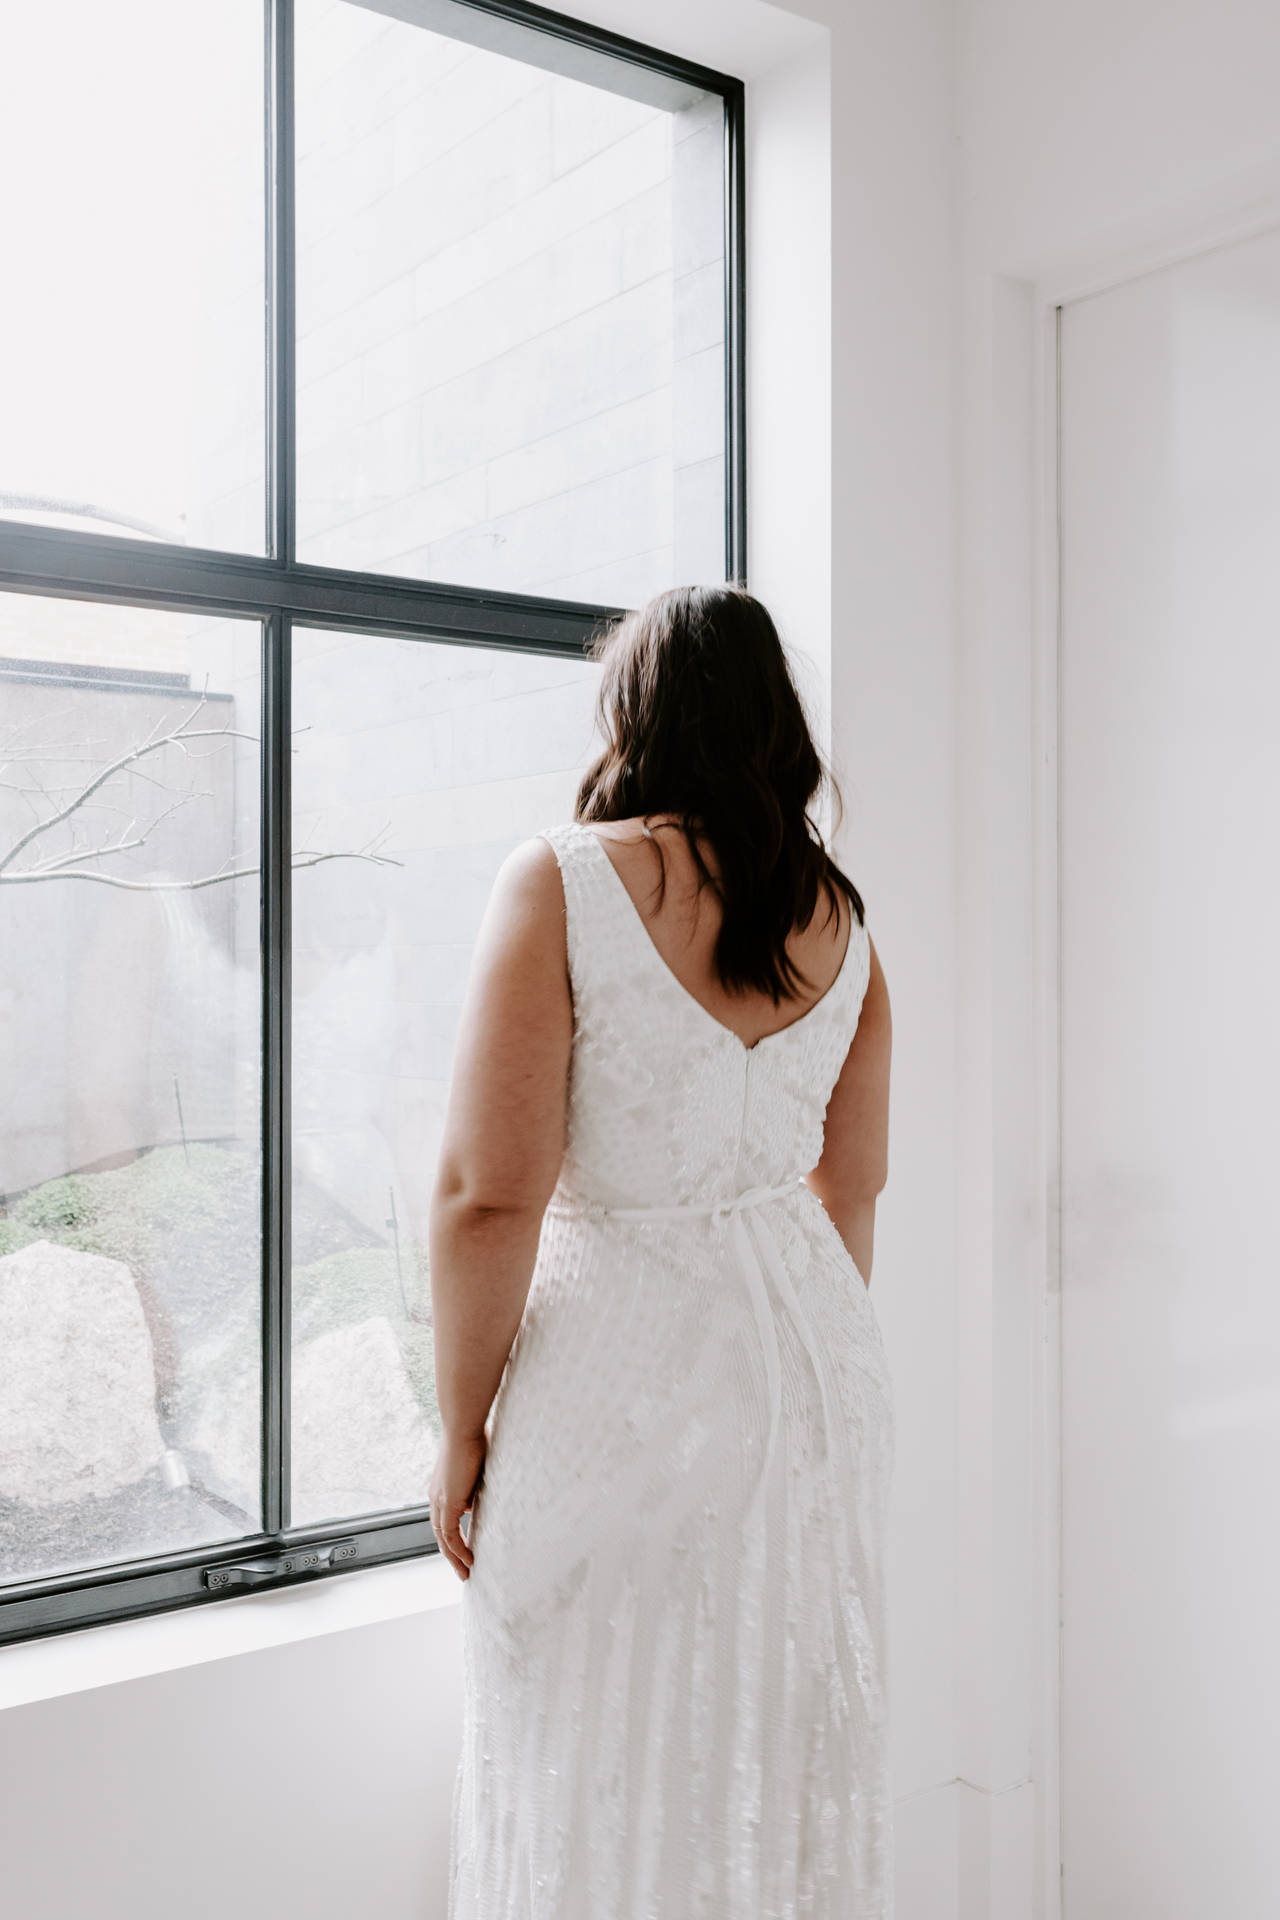 Wedding Aesthetic White Dress Background